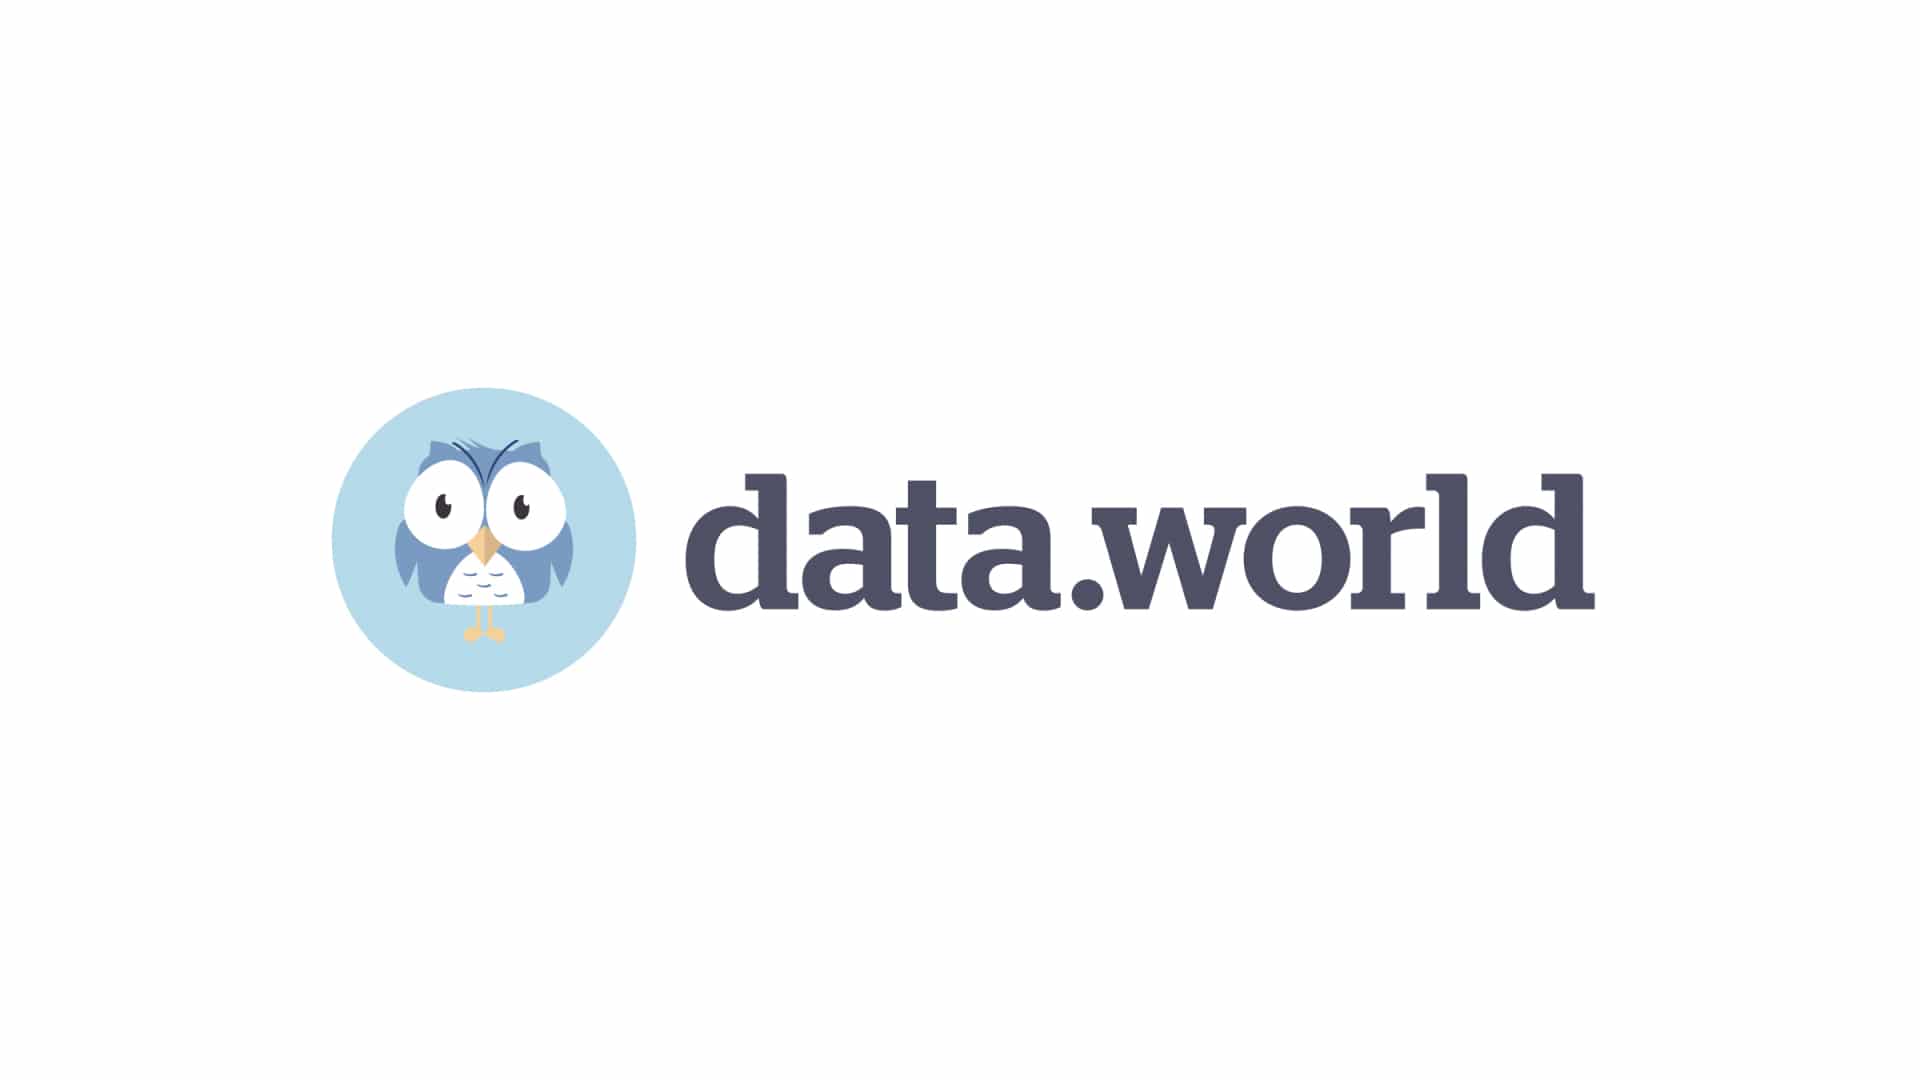 Data.world